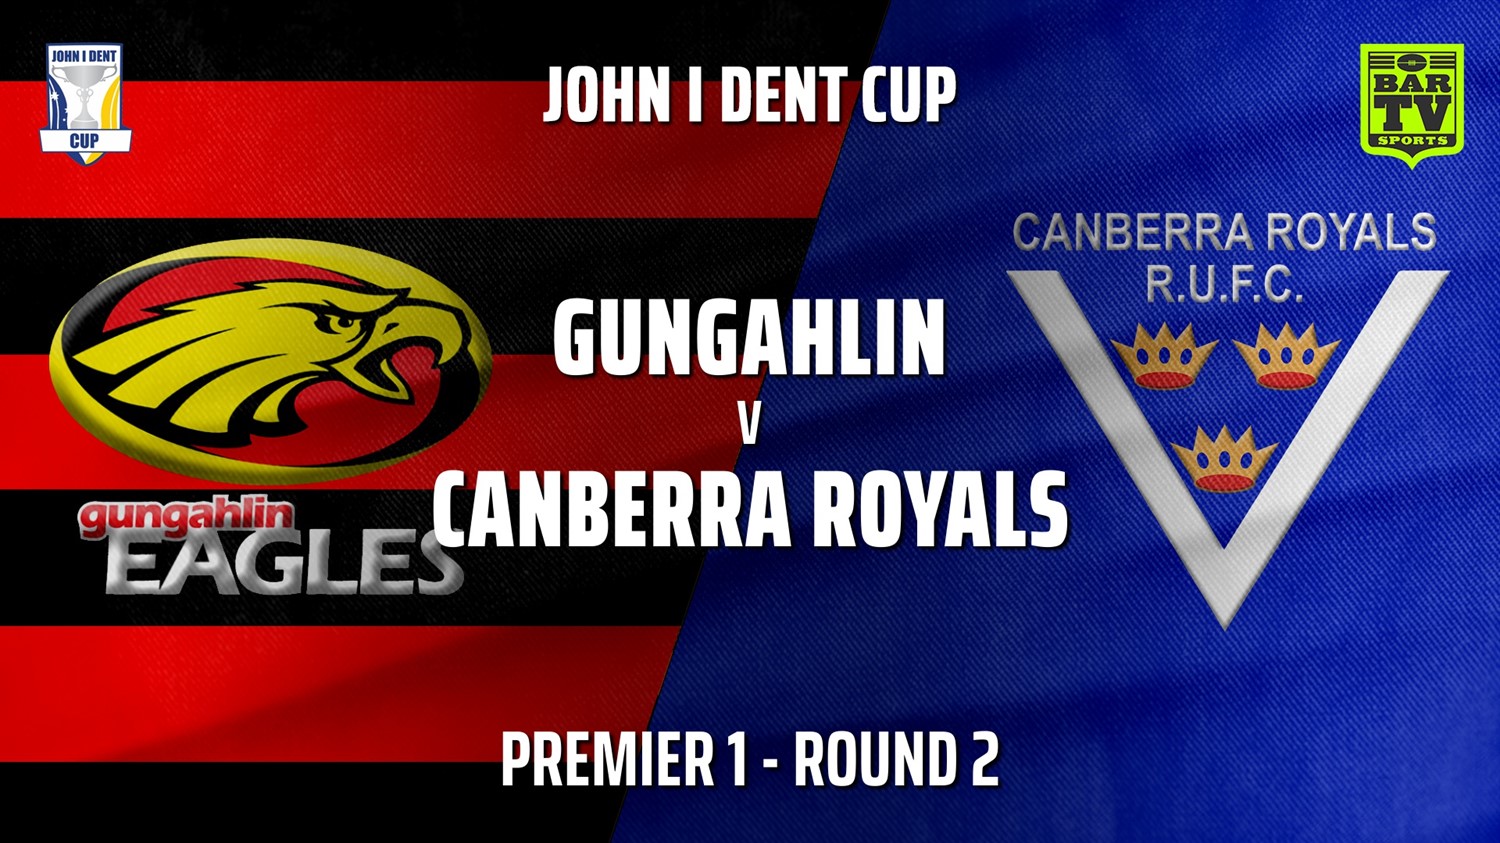 210421-John I Dent Round 2 - Premier 1 - Gungahlin Eagles v Canberra Royals Minigame Slate Image